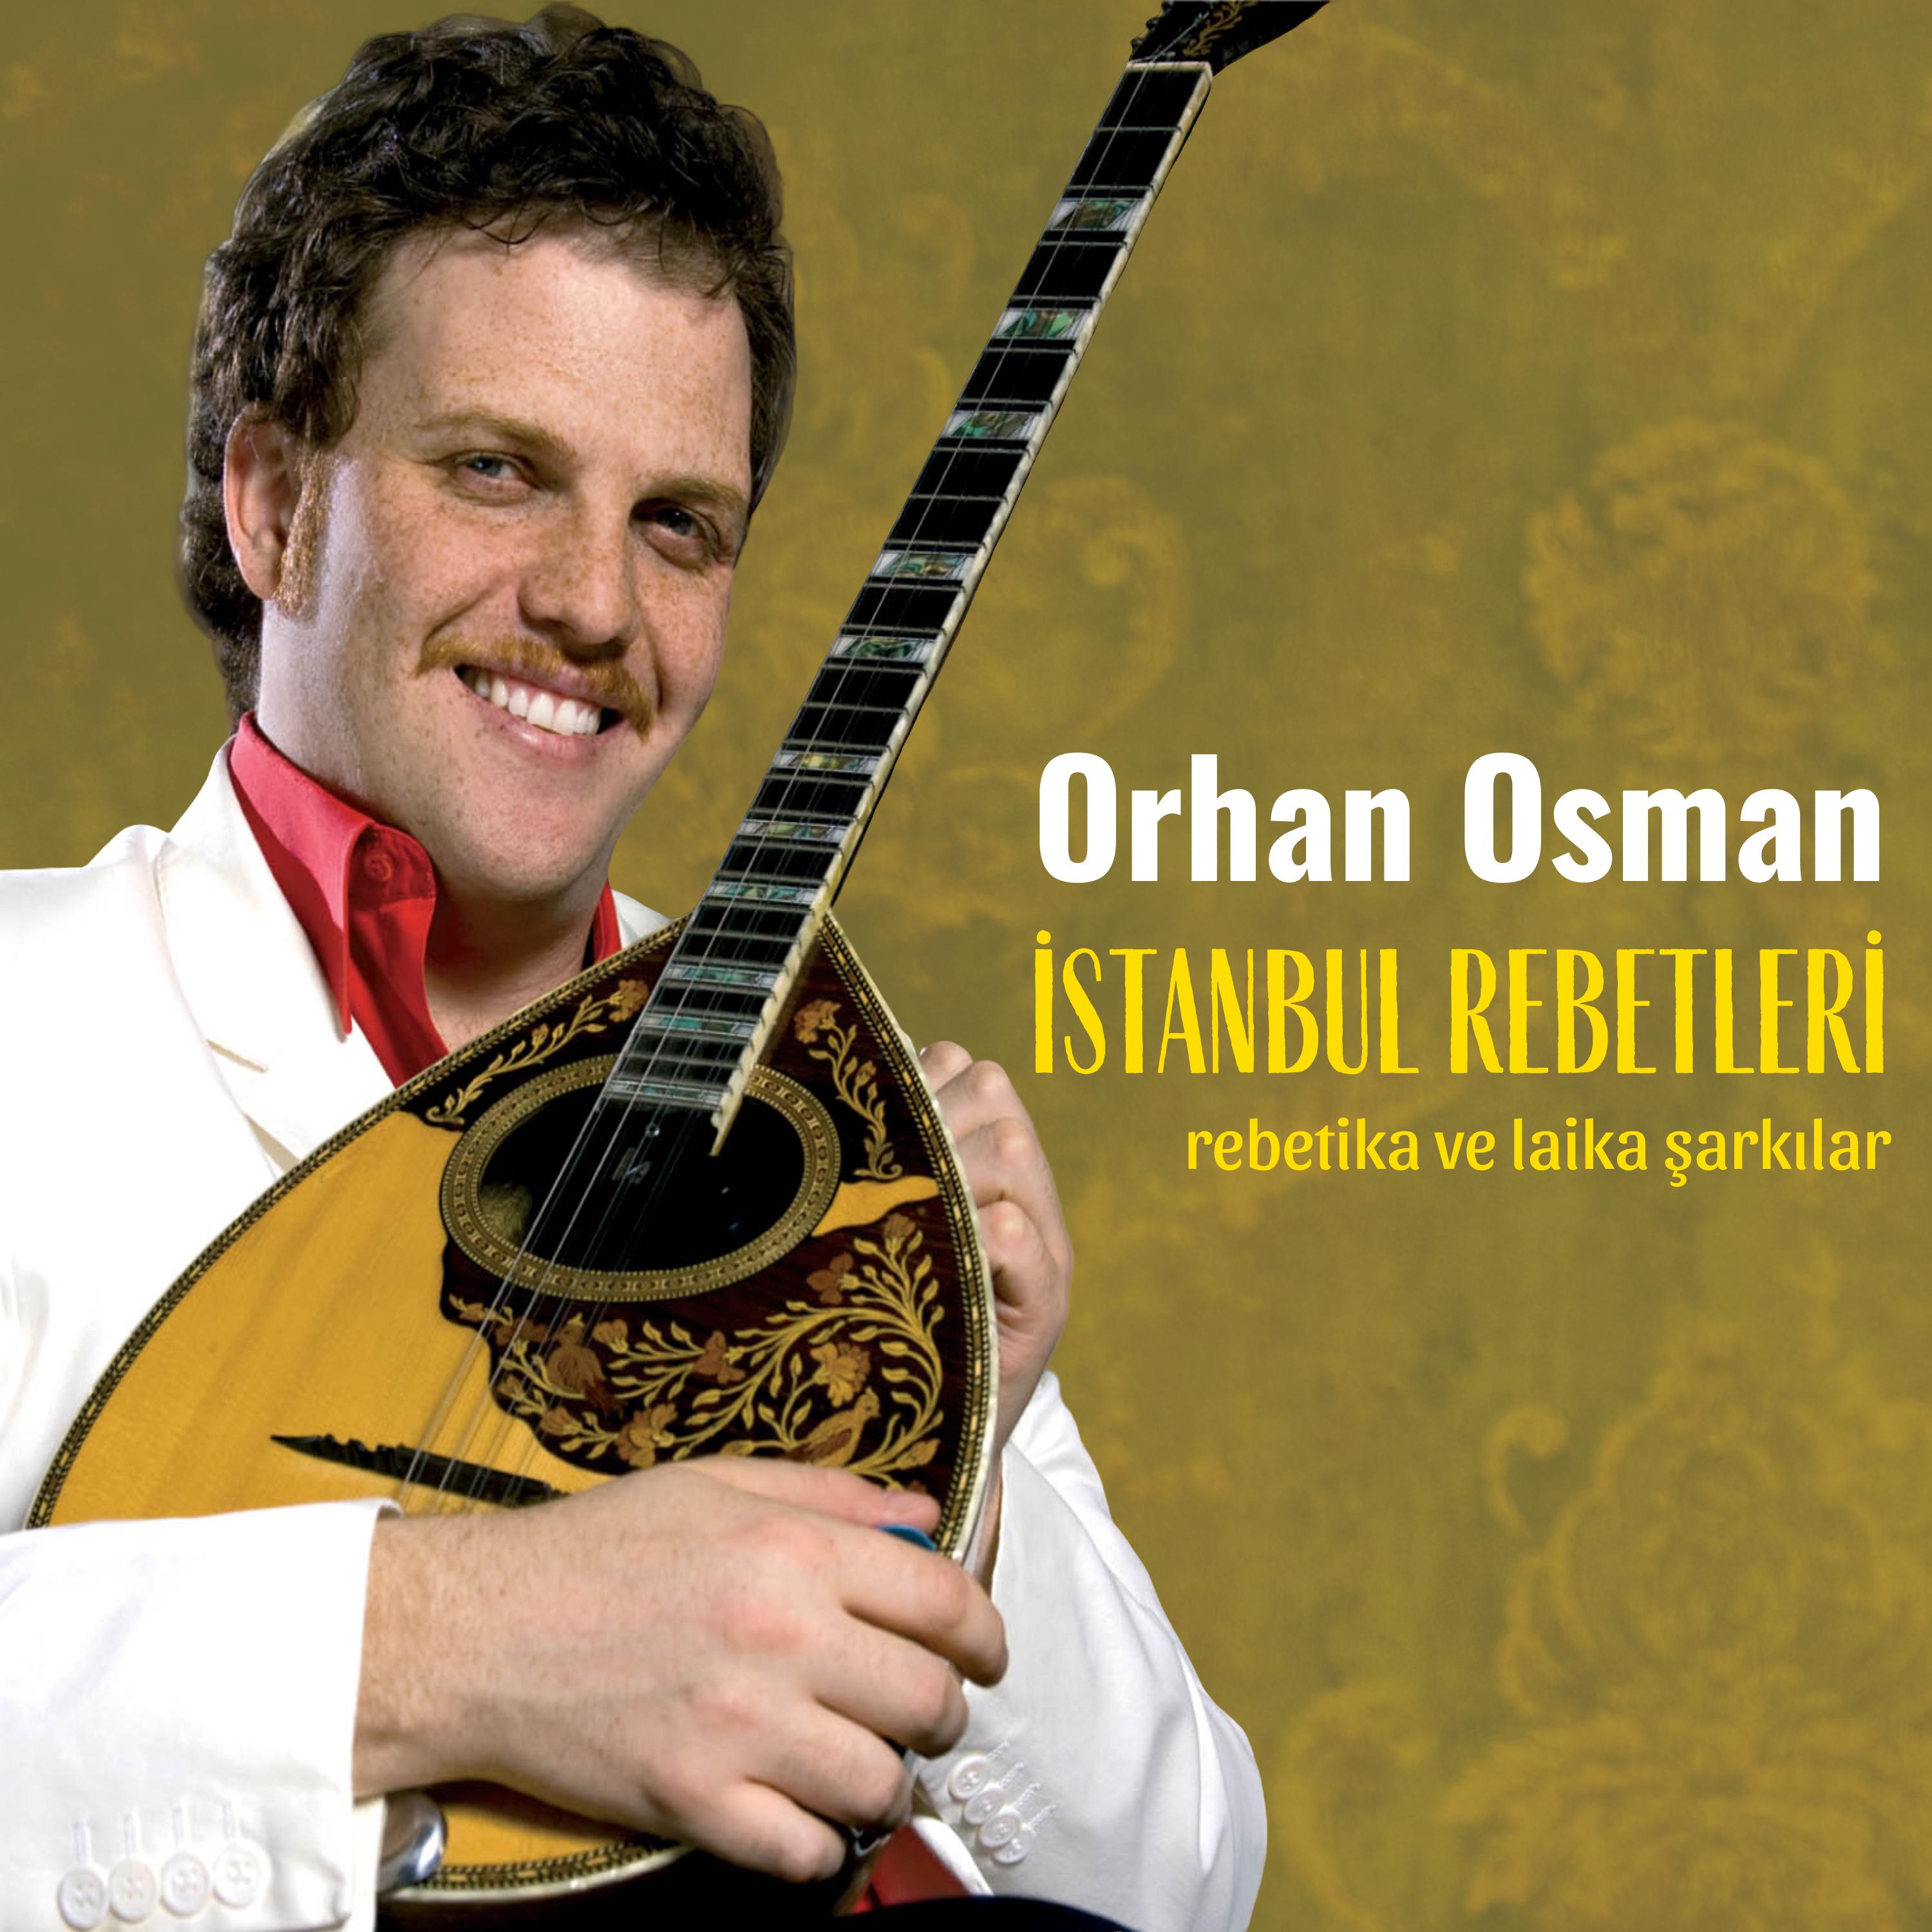 Orhan Osman - Buzukist